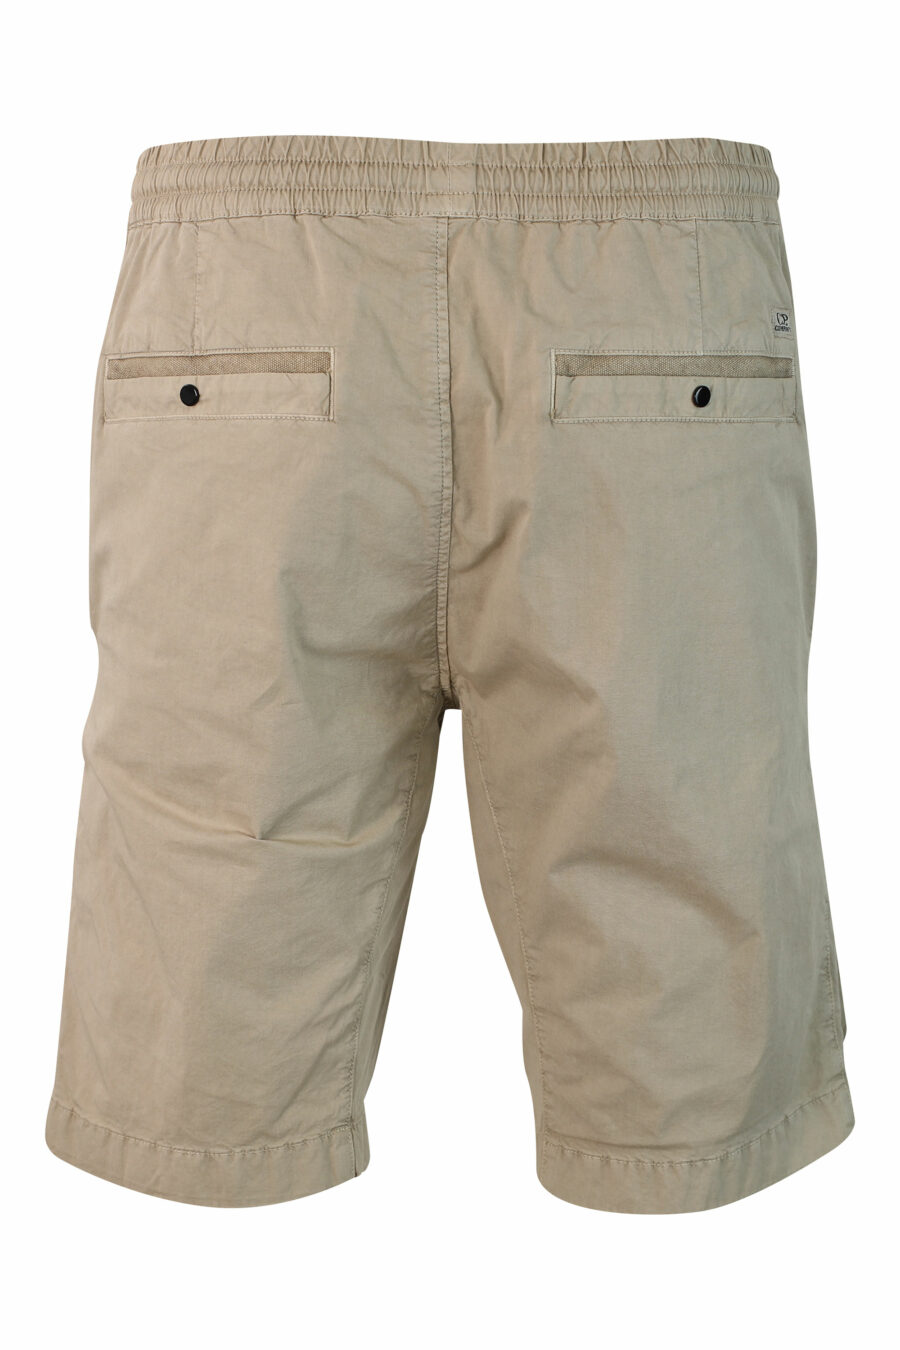 Pantalón corto beige elástico con bolsillos frontales y minilogo circular - IMG 9909 1